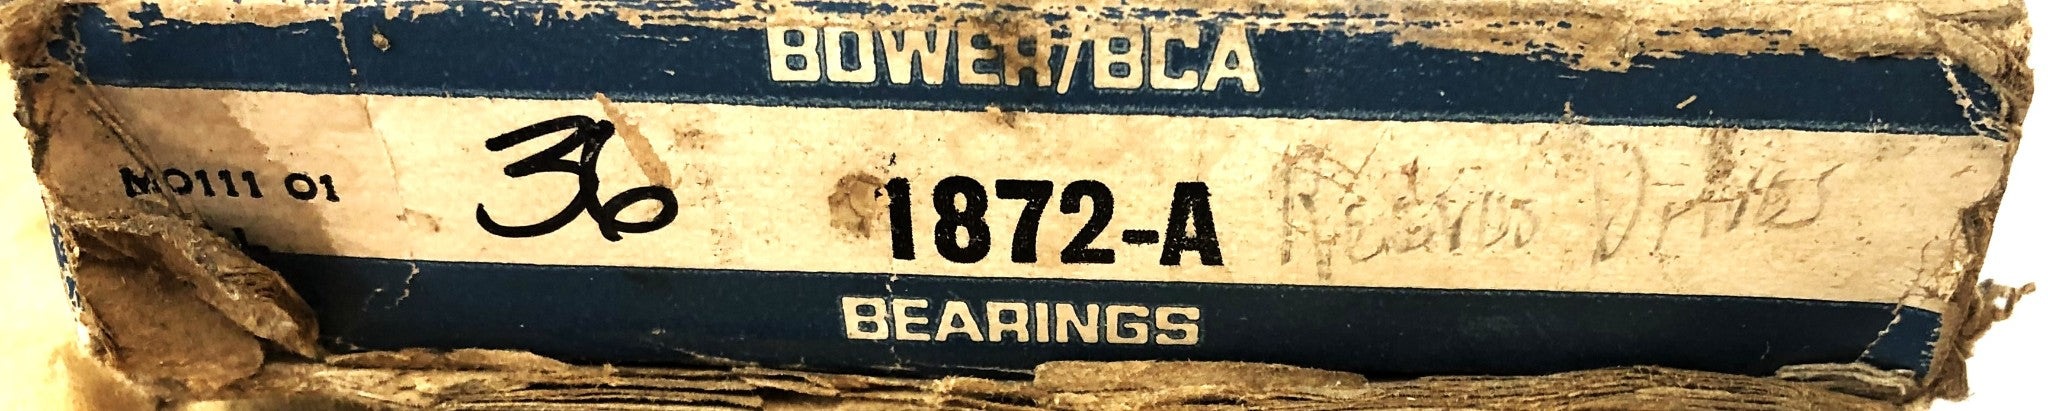 Bower/BCA Thrust Bearing 1872-A NOS